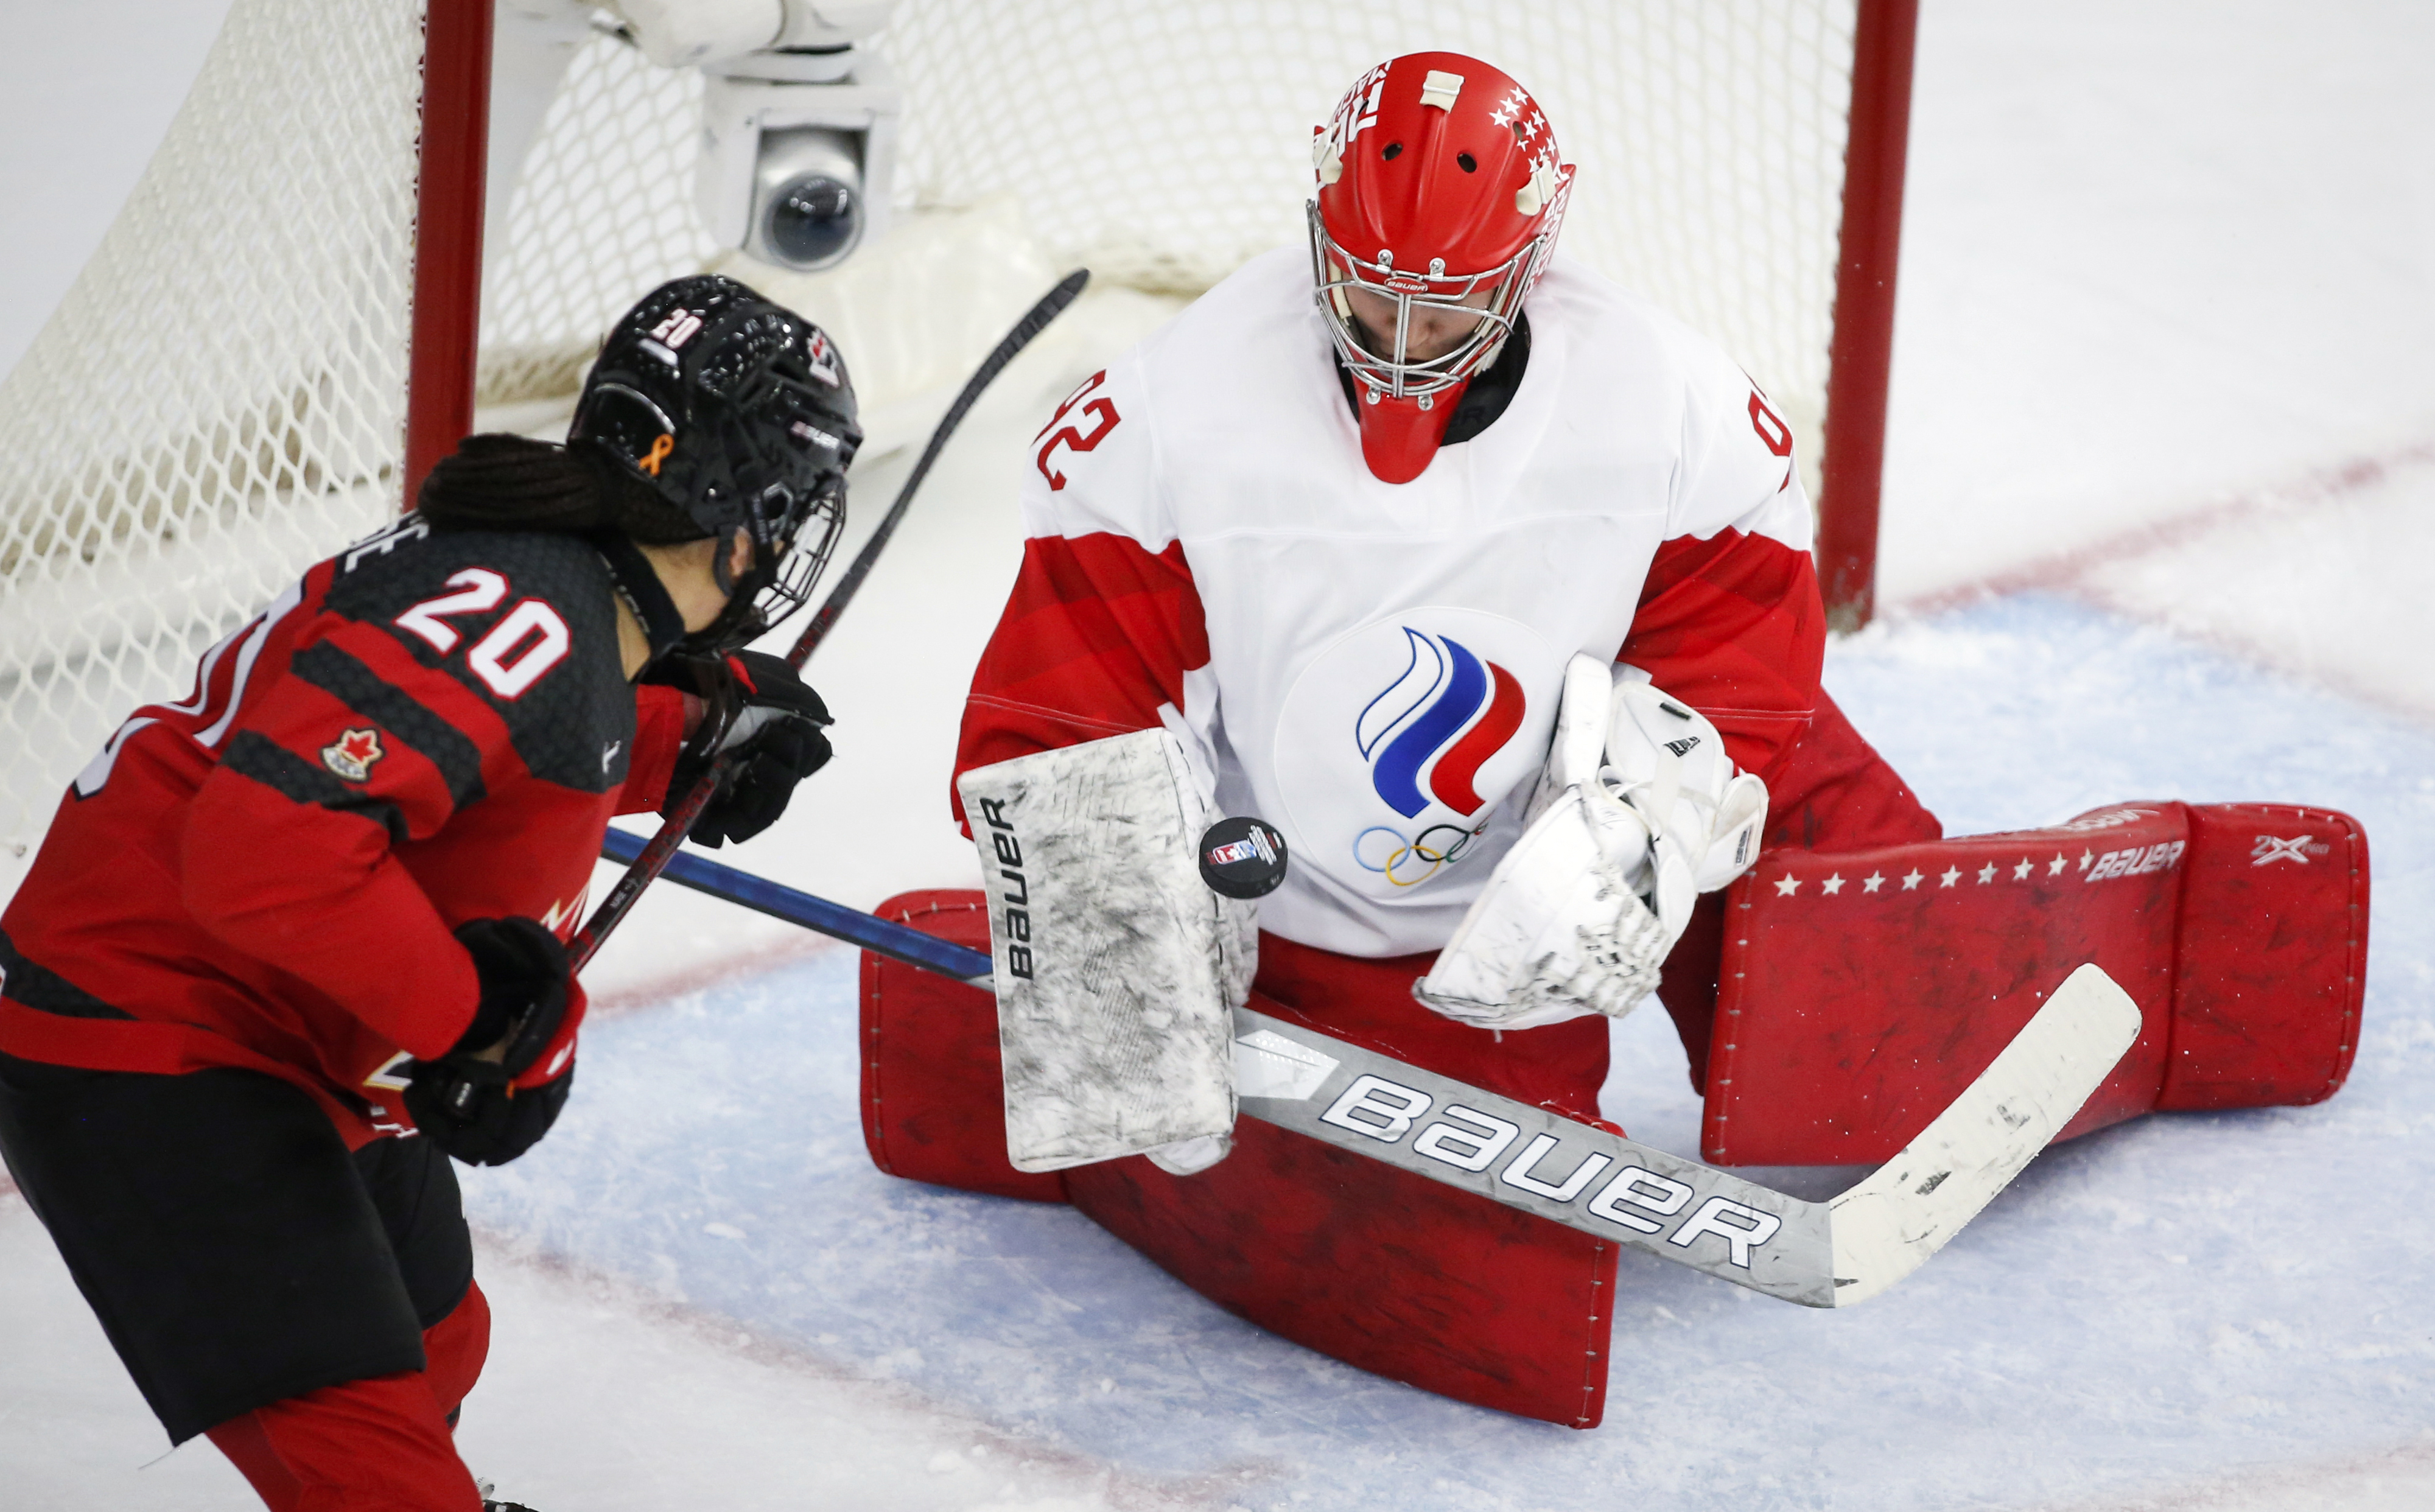 Результат хоккея женщины. Хоккеистка Мари Филип Пулен. Женский хоккей. Хоккей Россия Канада. Женский хоккей в России.